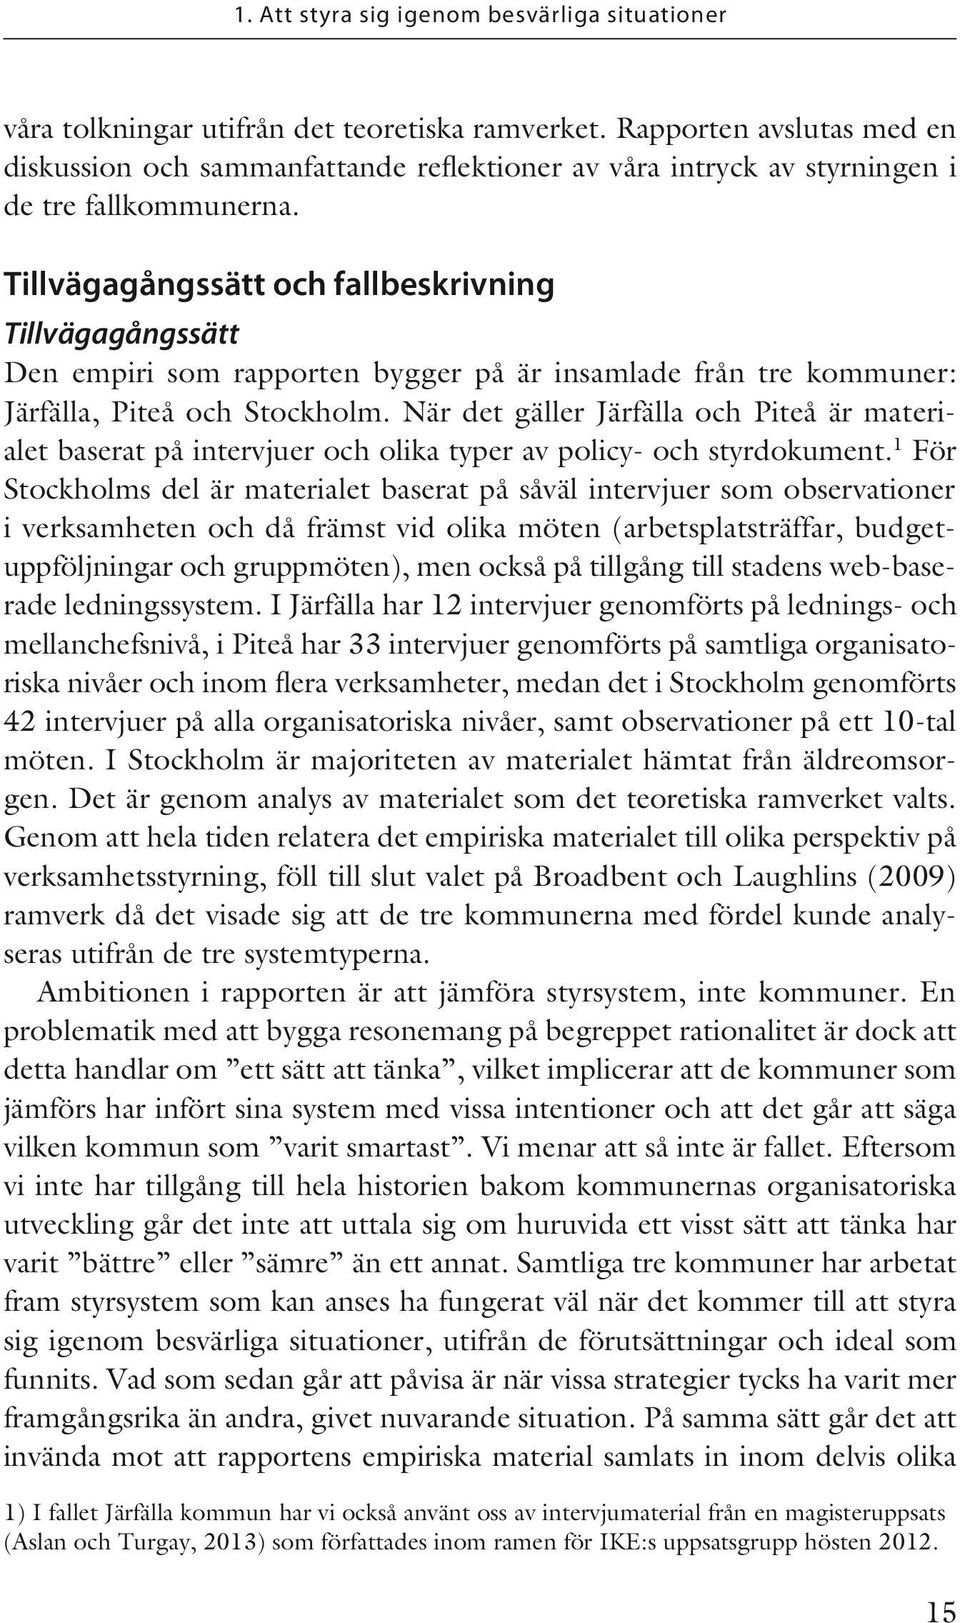 Tillvägagångssätt och fallbeskrivning Tillvägagångssätt Den empiri som rapporten bygger på är insamlade från tre kommuner: Järfälla, Piteå och Stockholm.